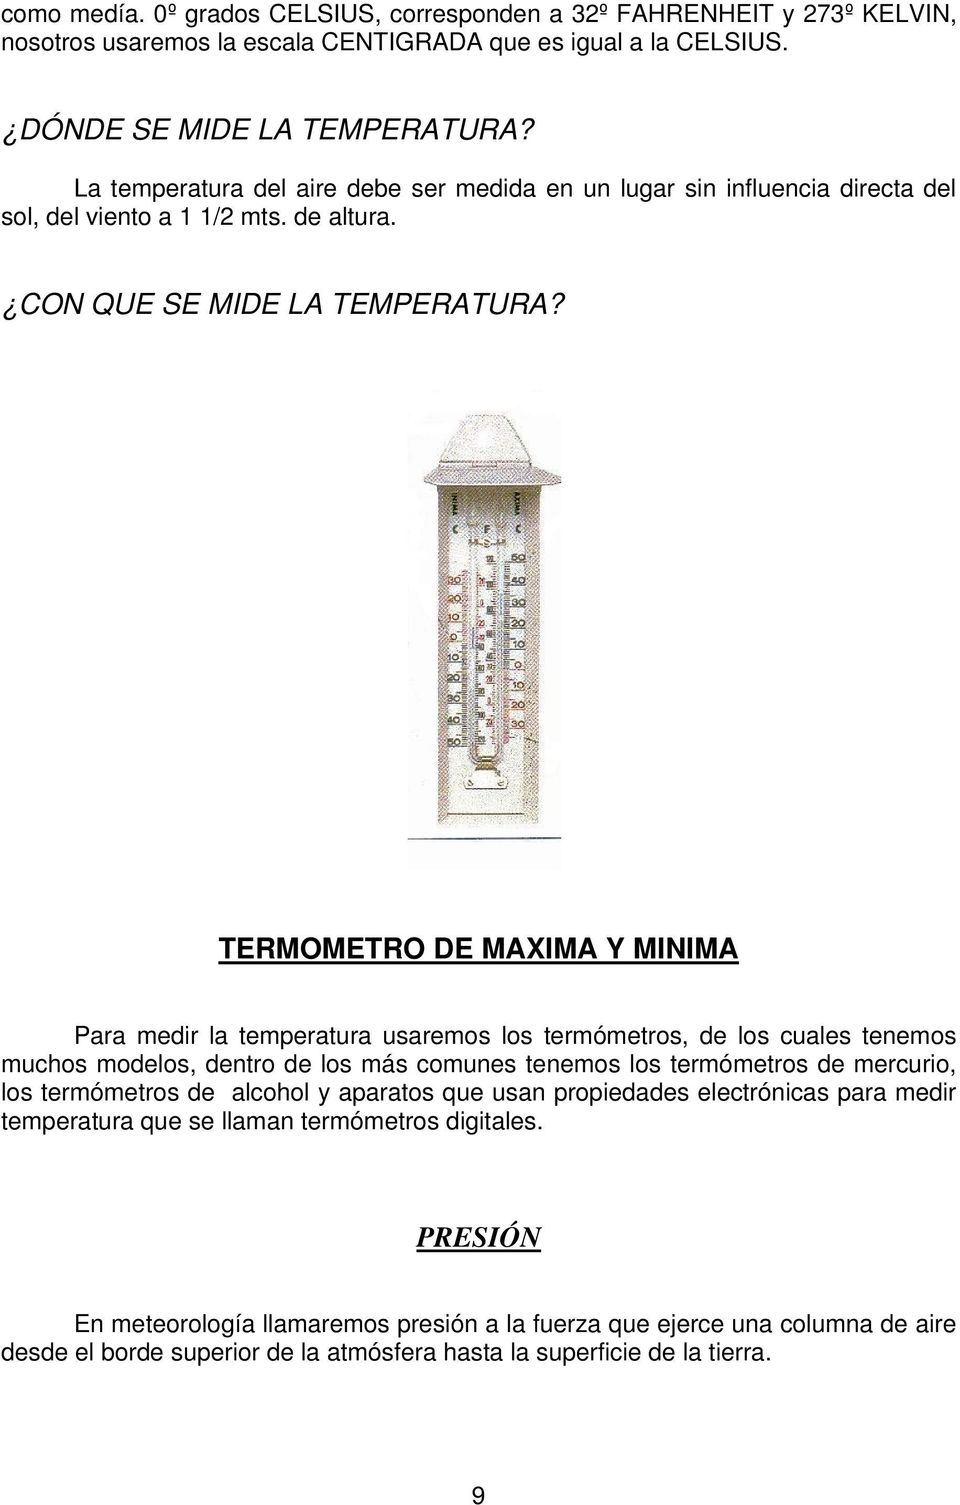 TERMOMETRO DE MAXIMA Y MINIMA Para medir la temperatura usaremos los termómetros, de los cuales tenemos muchos modelos, dentro de los más comunes tenemos los termómetros de mercurio, los termómetros